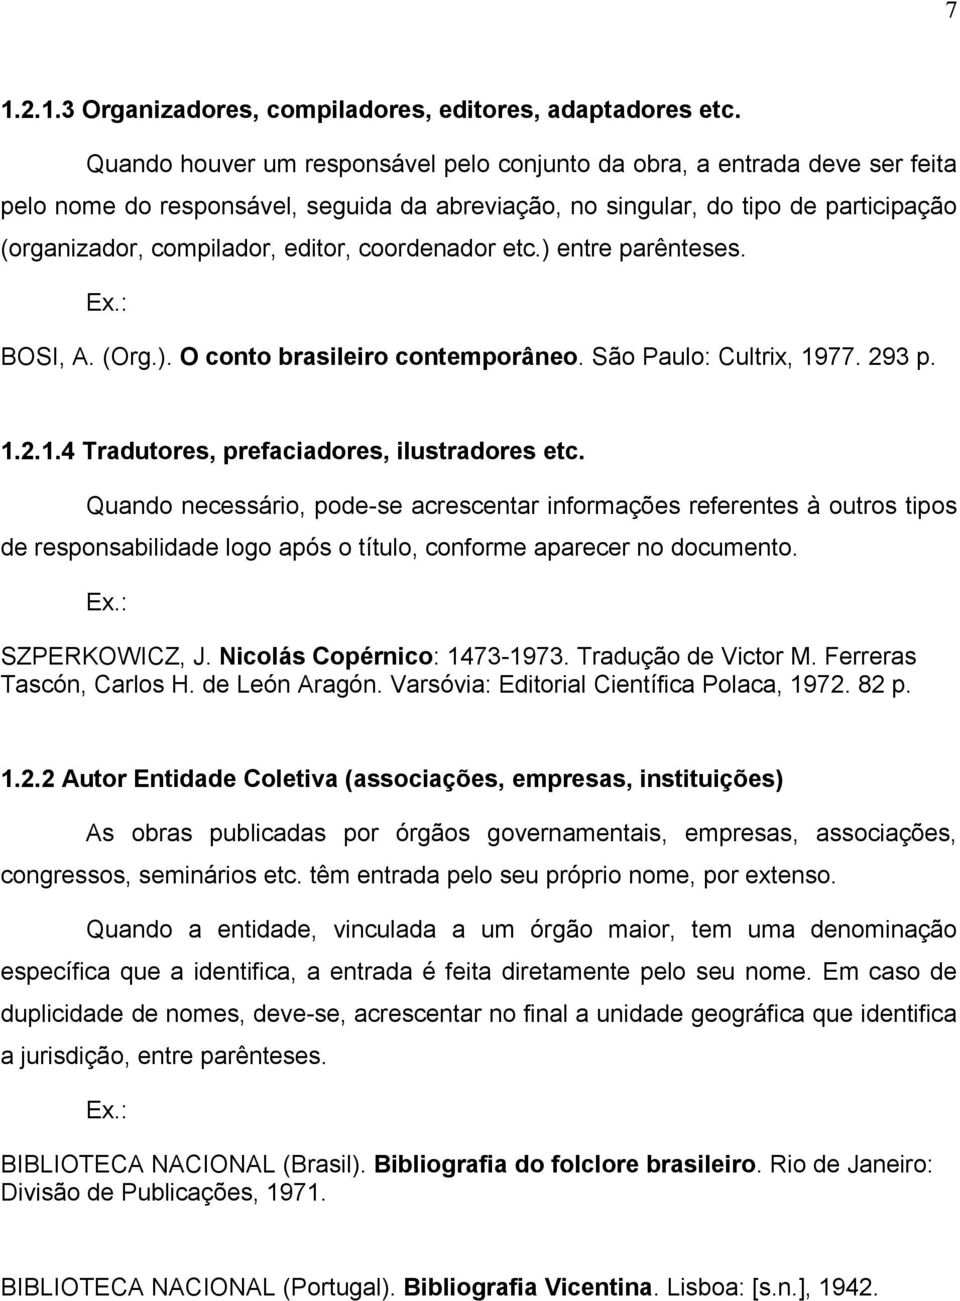 coordenador etc.) entre parênteses. Ex.: BOSI, A. (Org.). O conto brasileiro contemporâneo. São Paulo: Cultrix, 1977. 293 p. 1.2.1.4 Tradutores, prefaciadores, ilustradores etc.